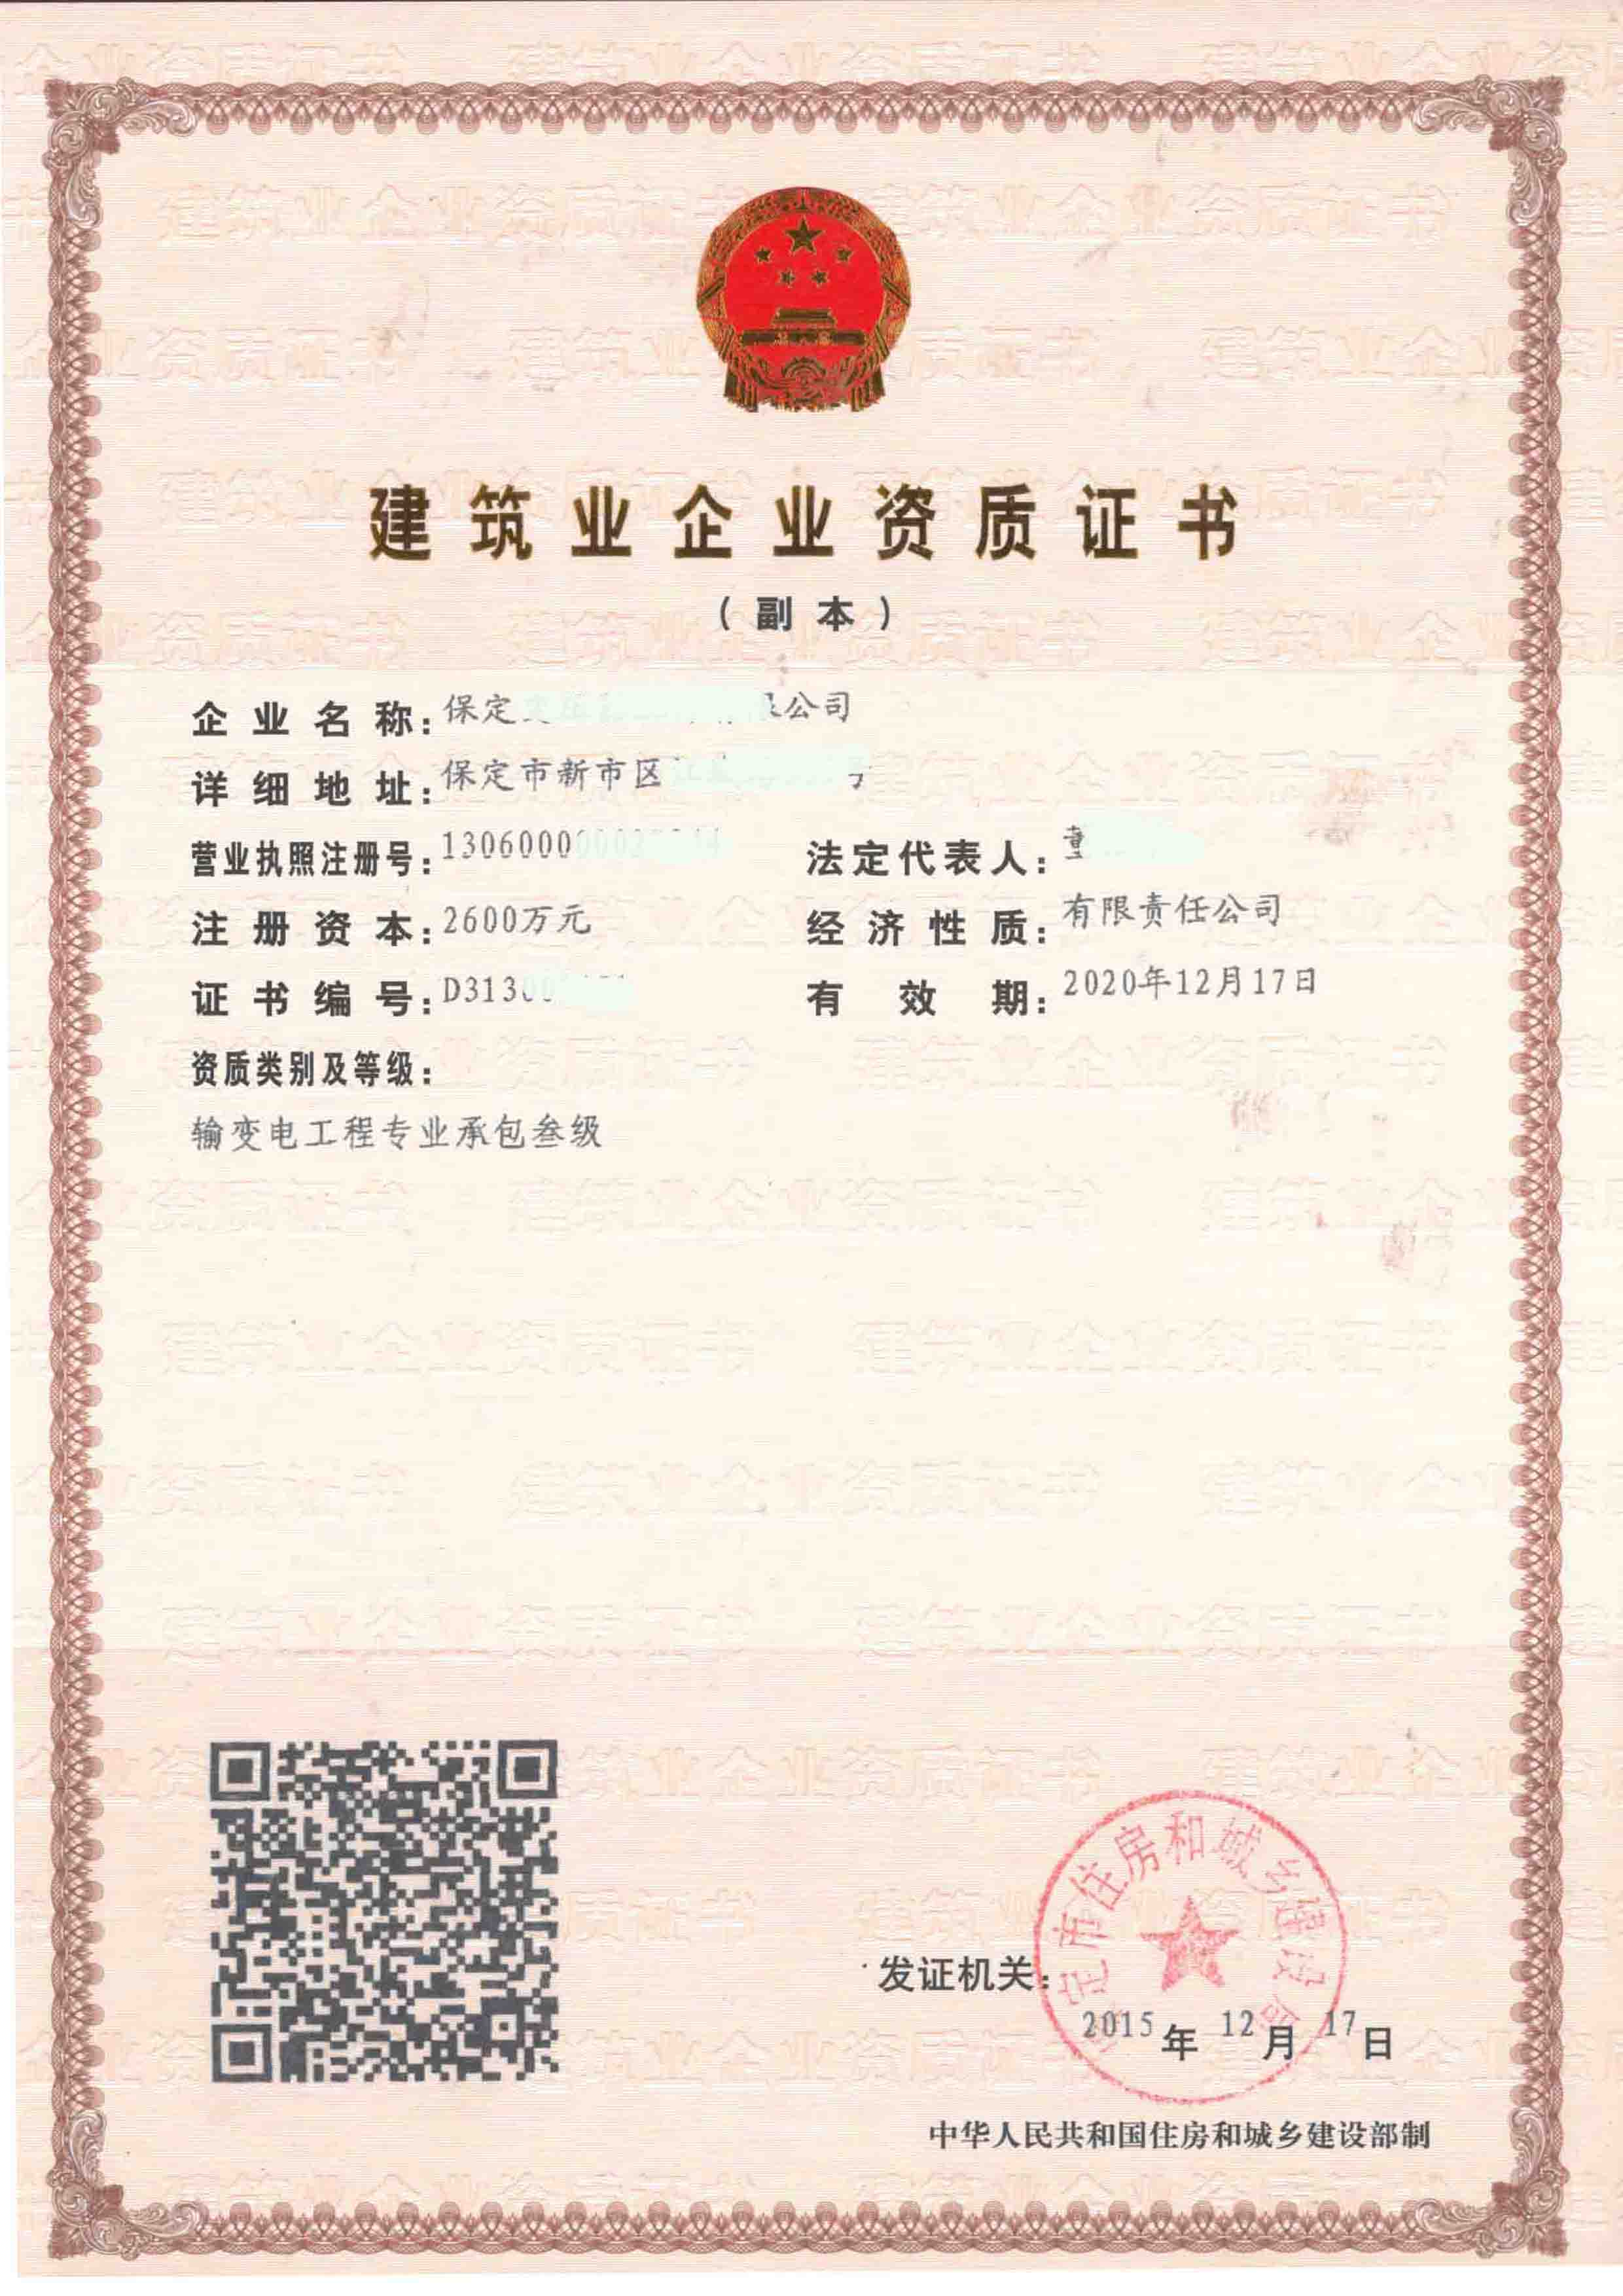 牛宝体育:北京全路通信信号研究设计院集团有限公司武汉分公司